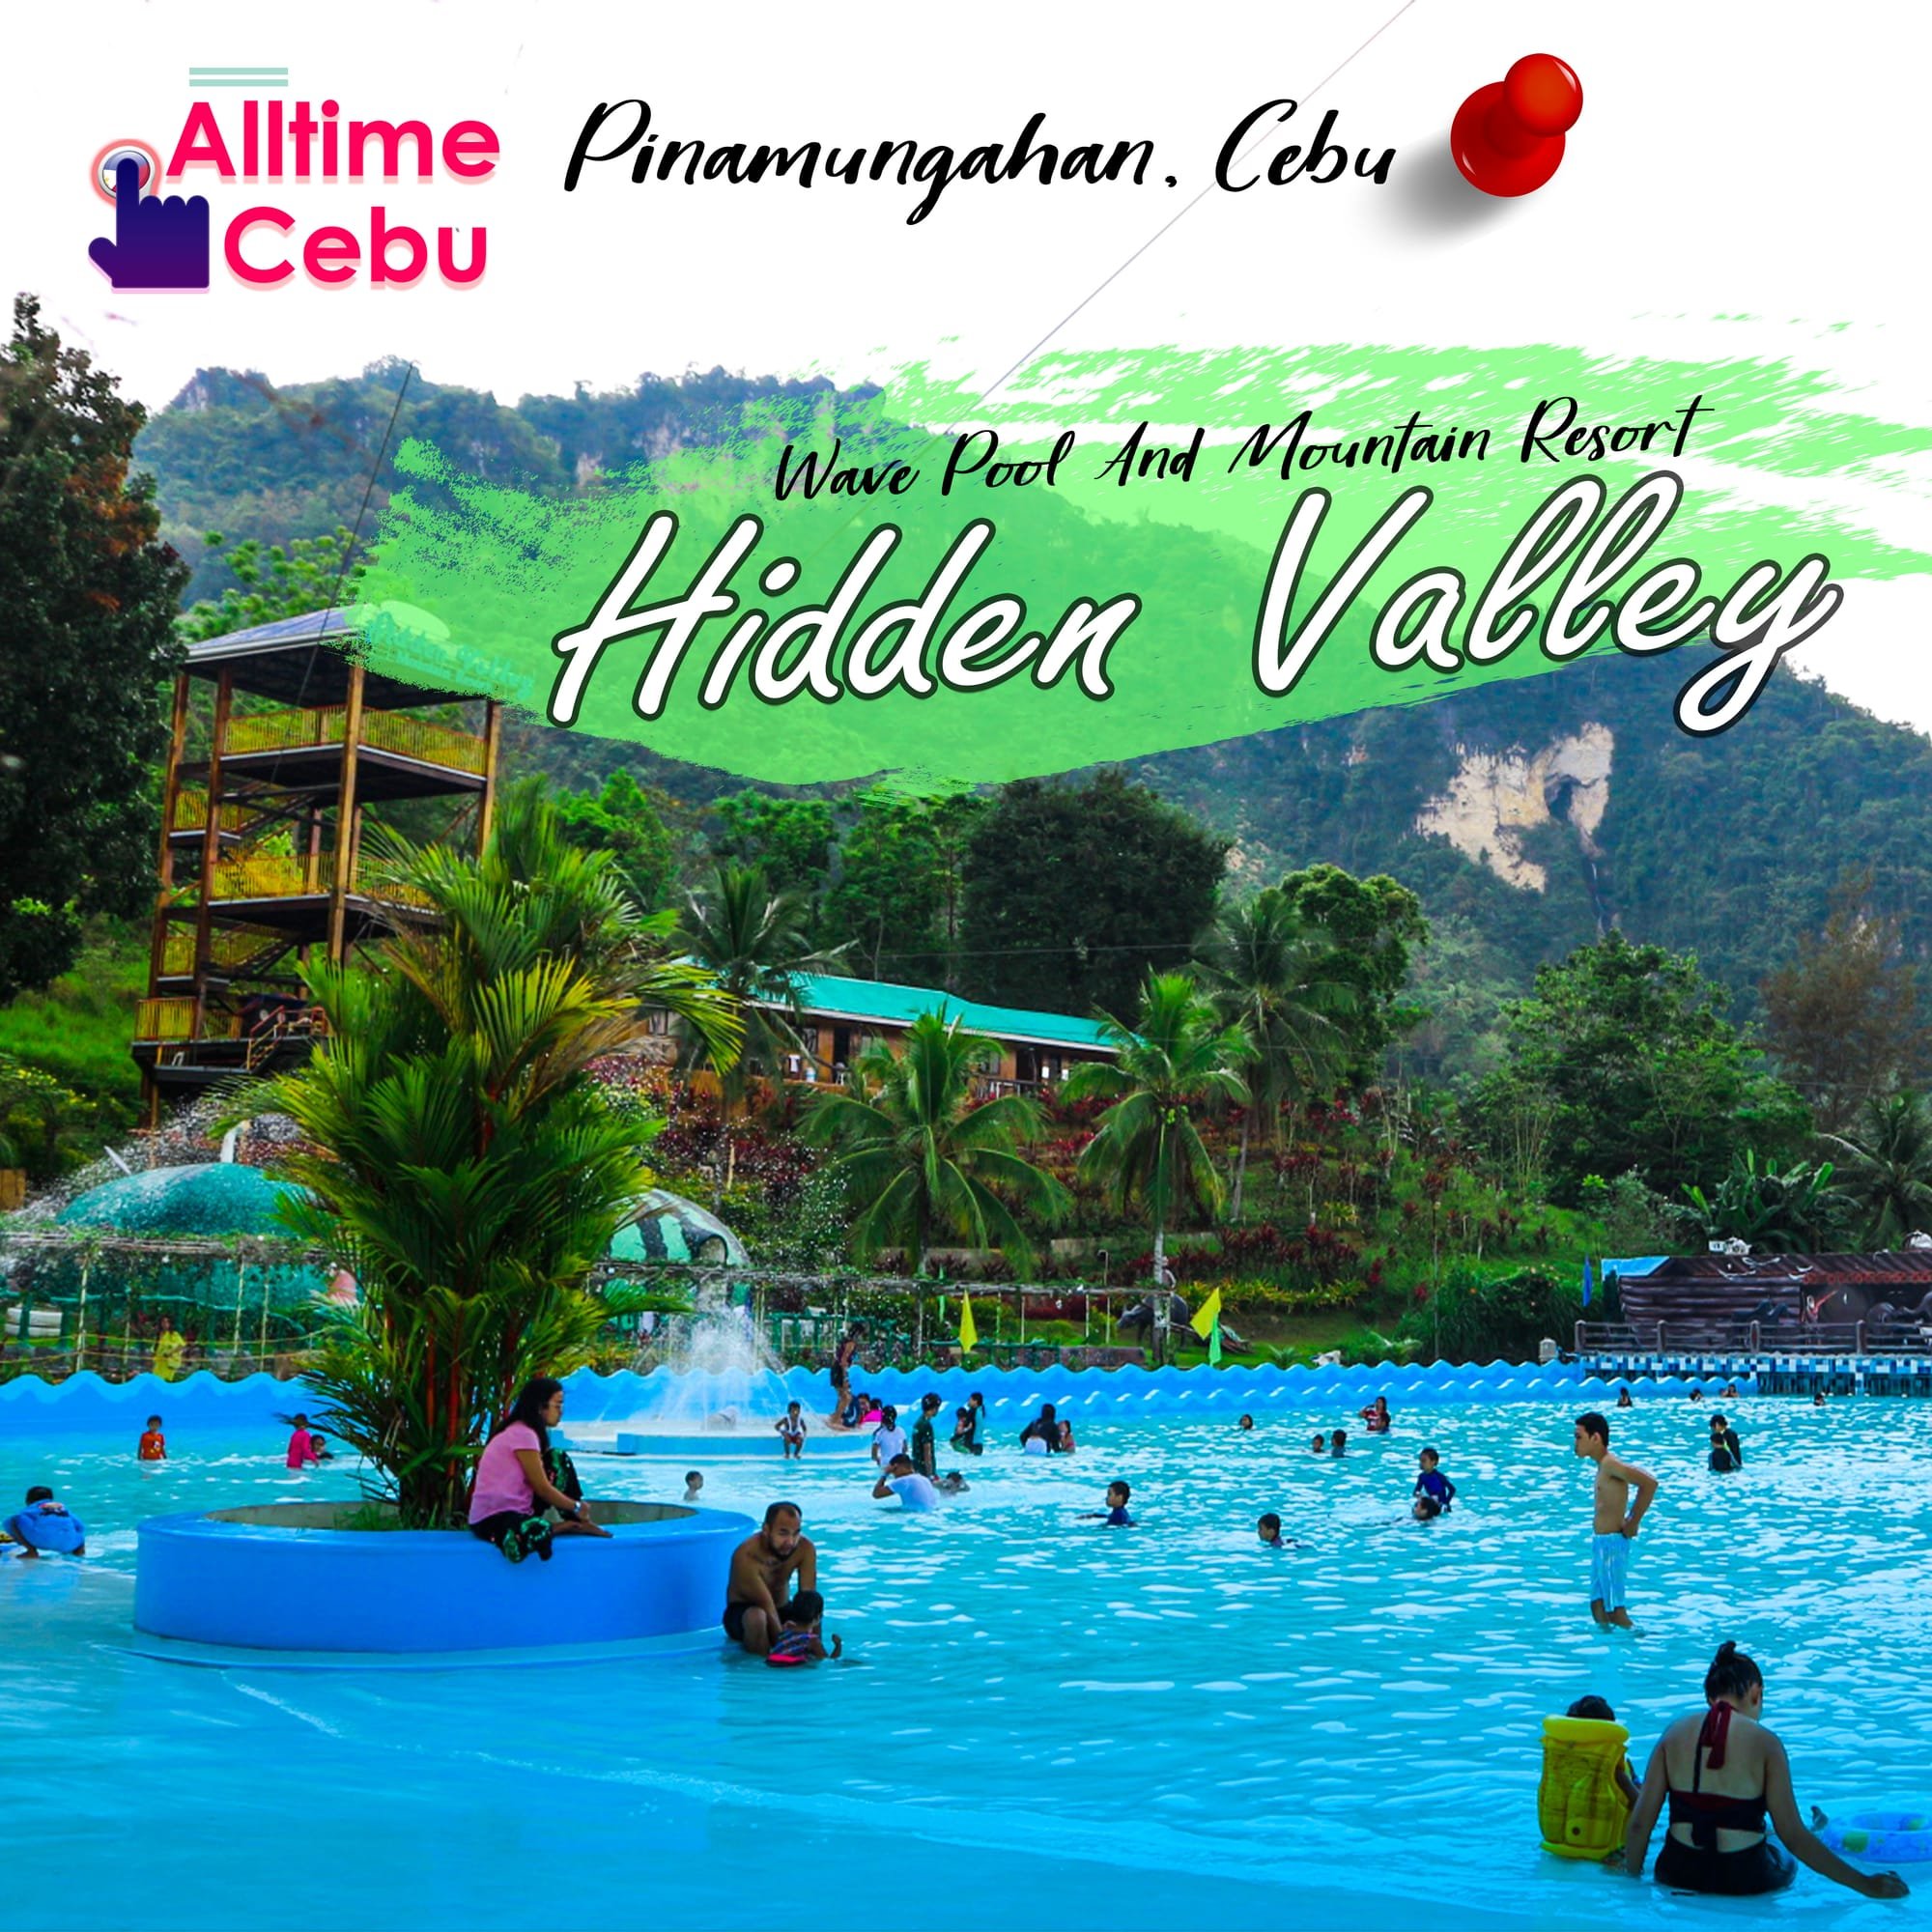 Make Waves at Hidden Valley Mountain, Wave Pool & Resort in Pinamungajan